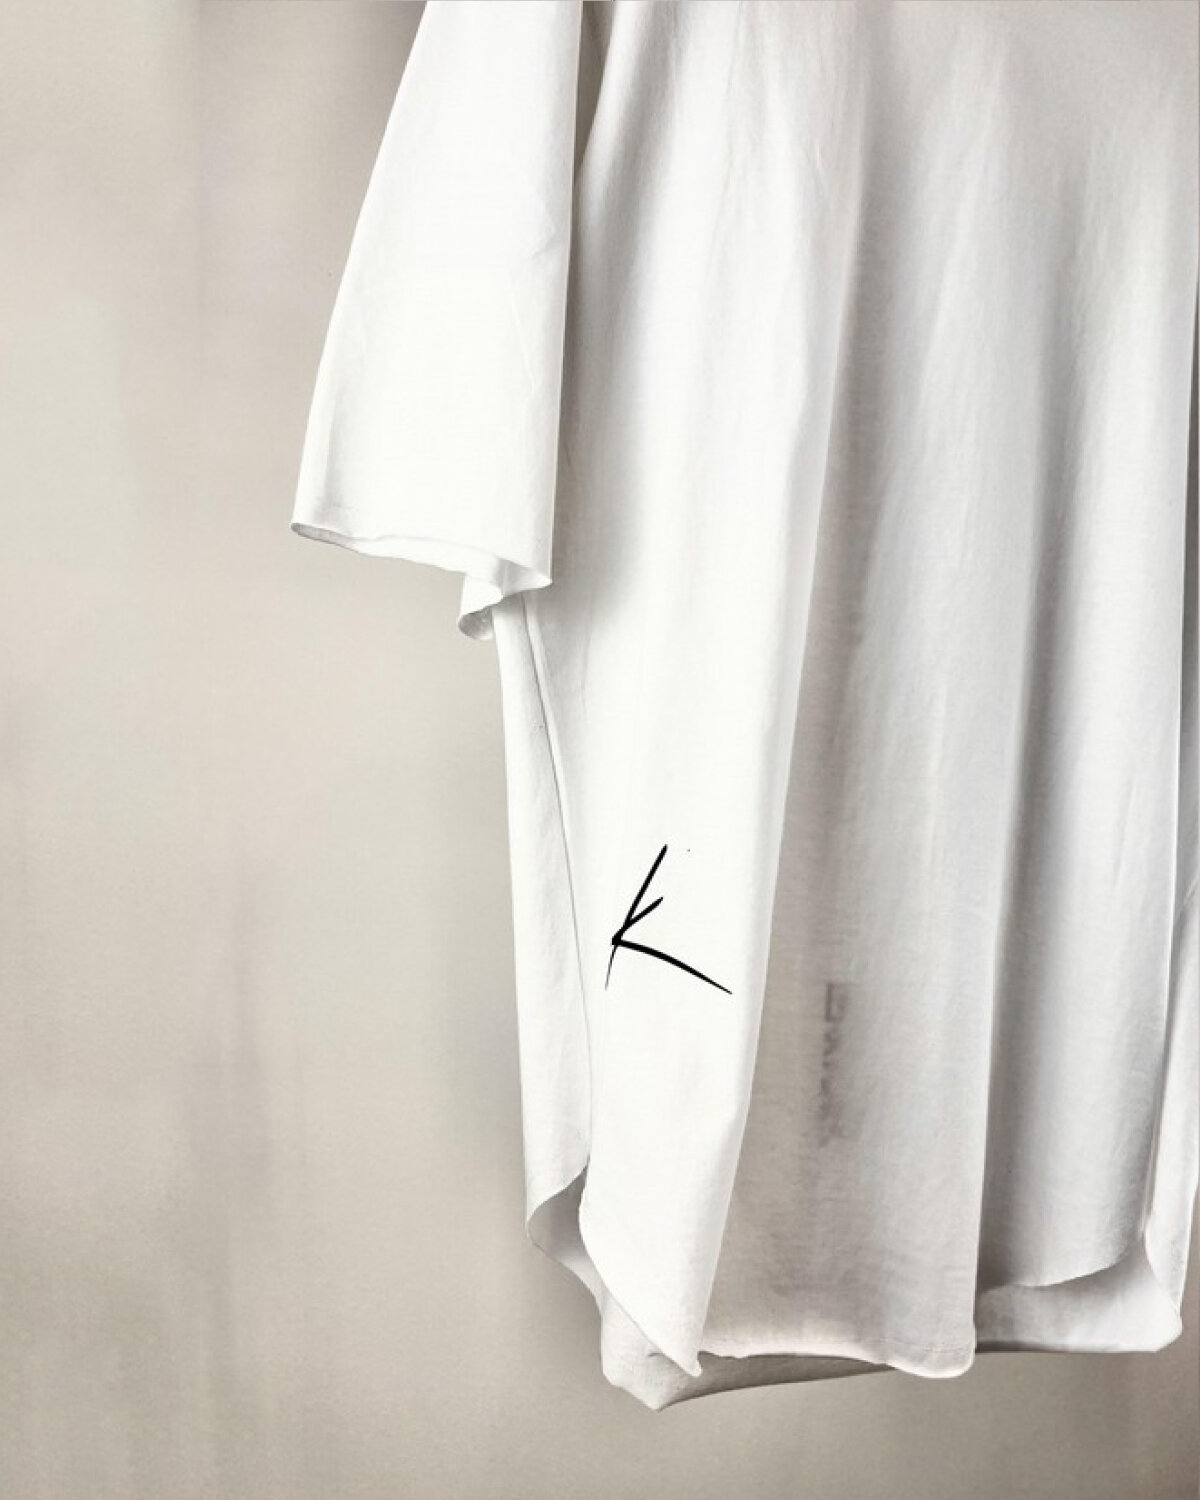 Μπλούζα λευκή μανίκι 3/4 λεπτομέρεια απο το λογότυπο στο πλαινό κάτω της μπλούζας.